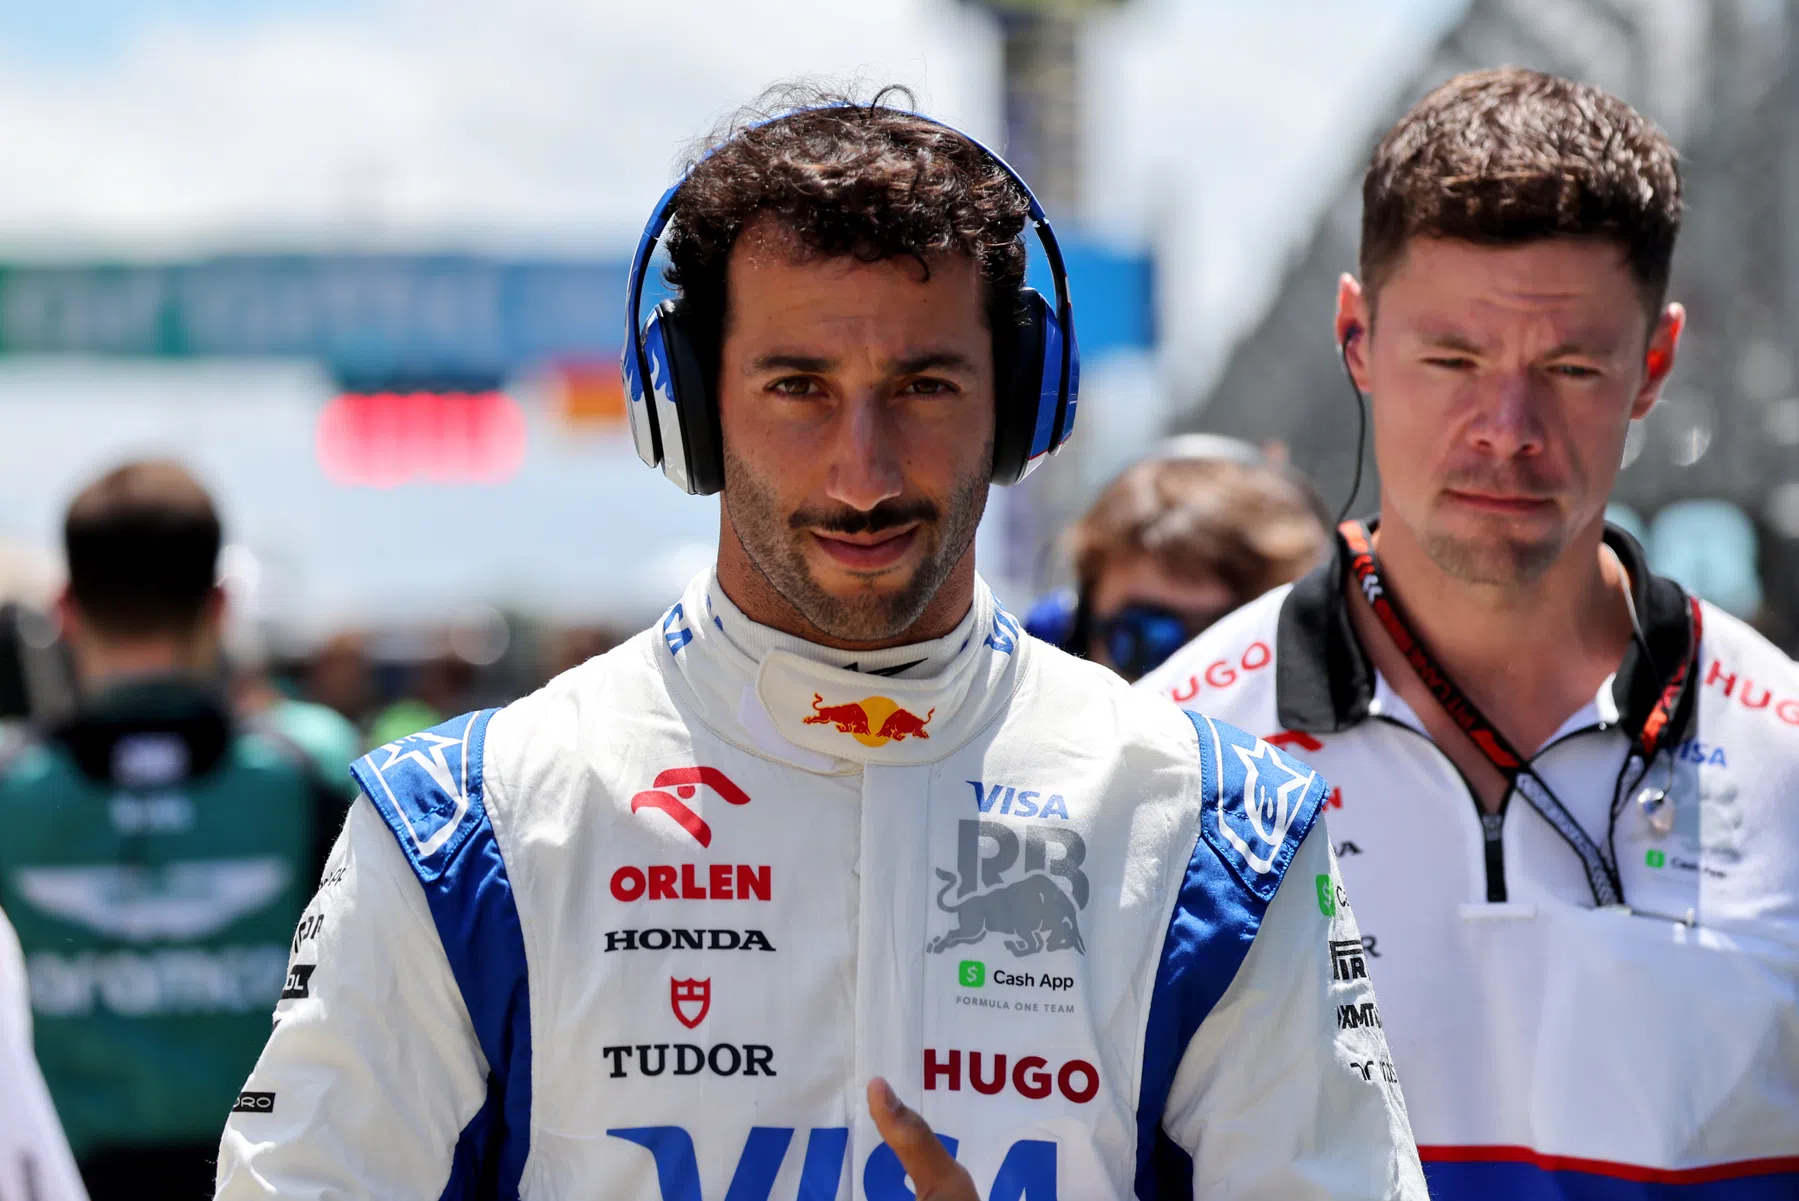 L'avenir de Daniel Ricciardo au Vcarb n'est pas clair